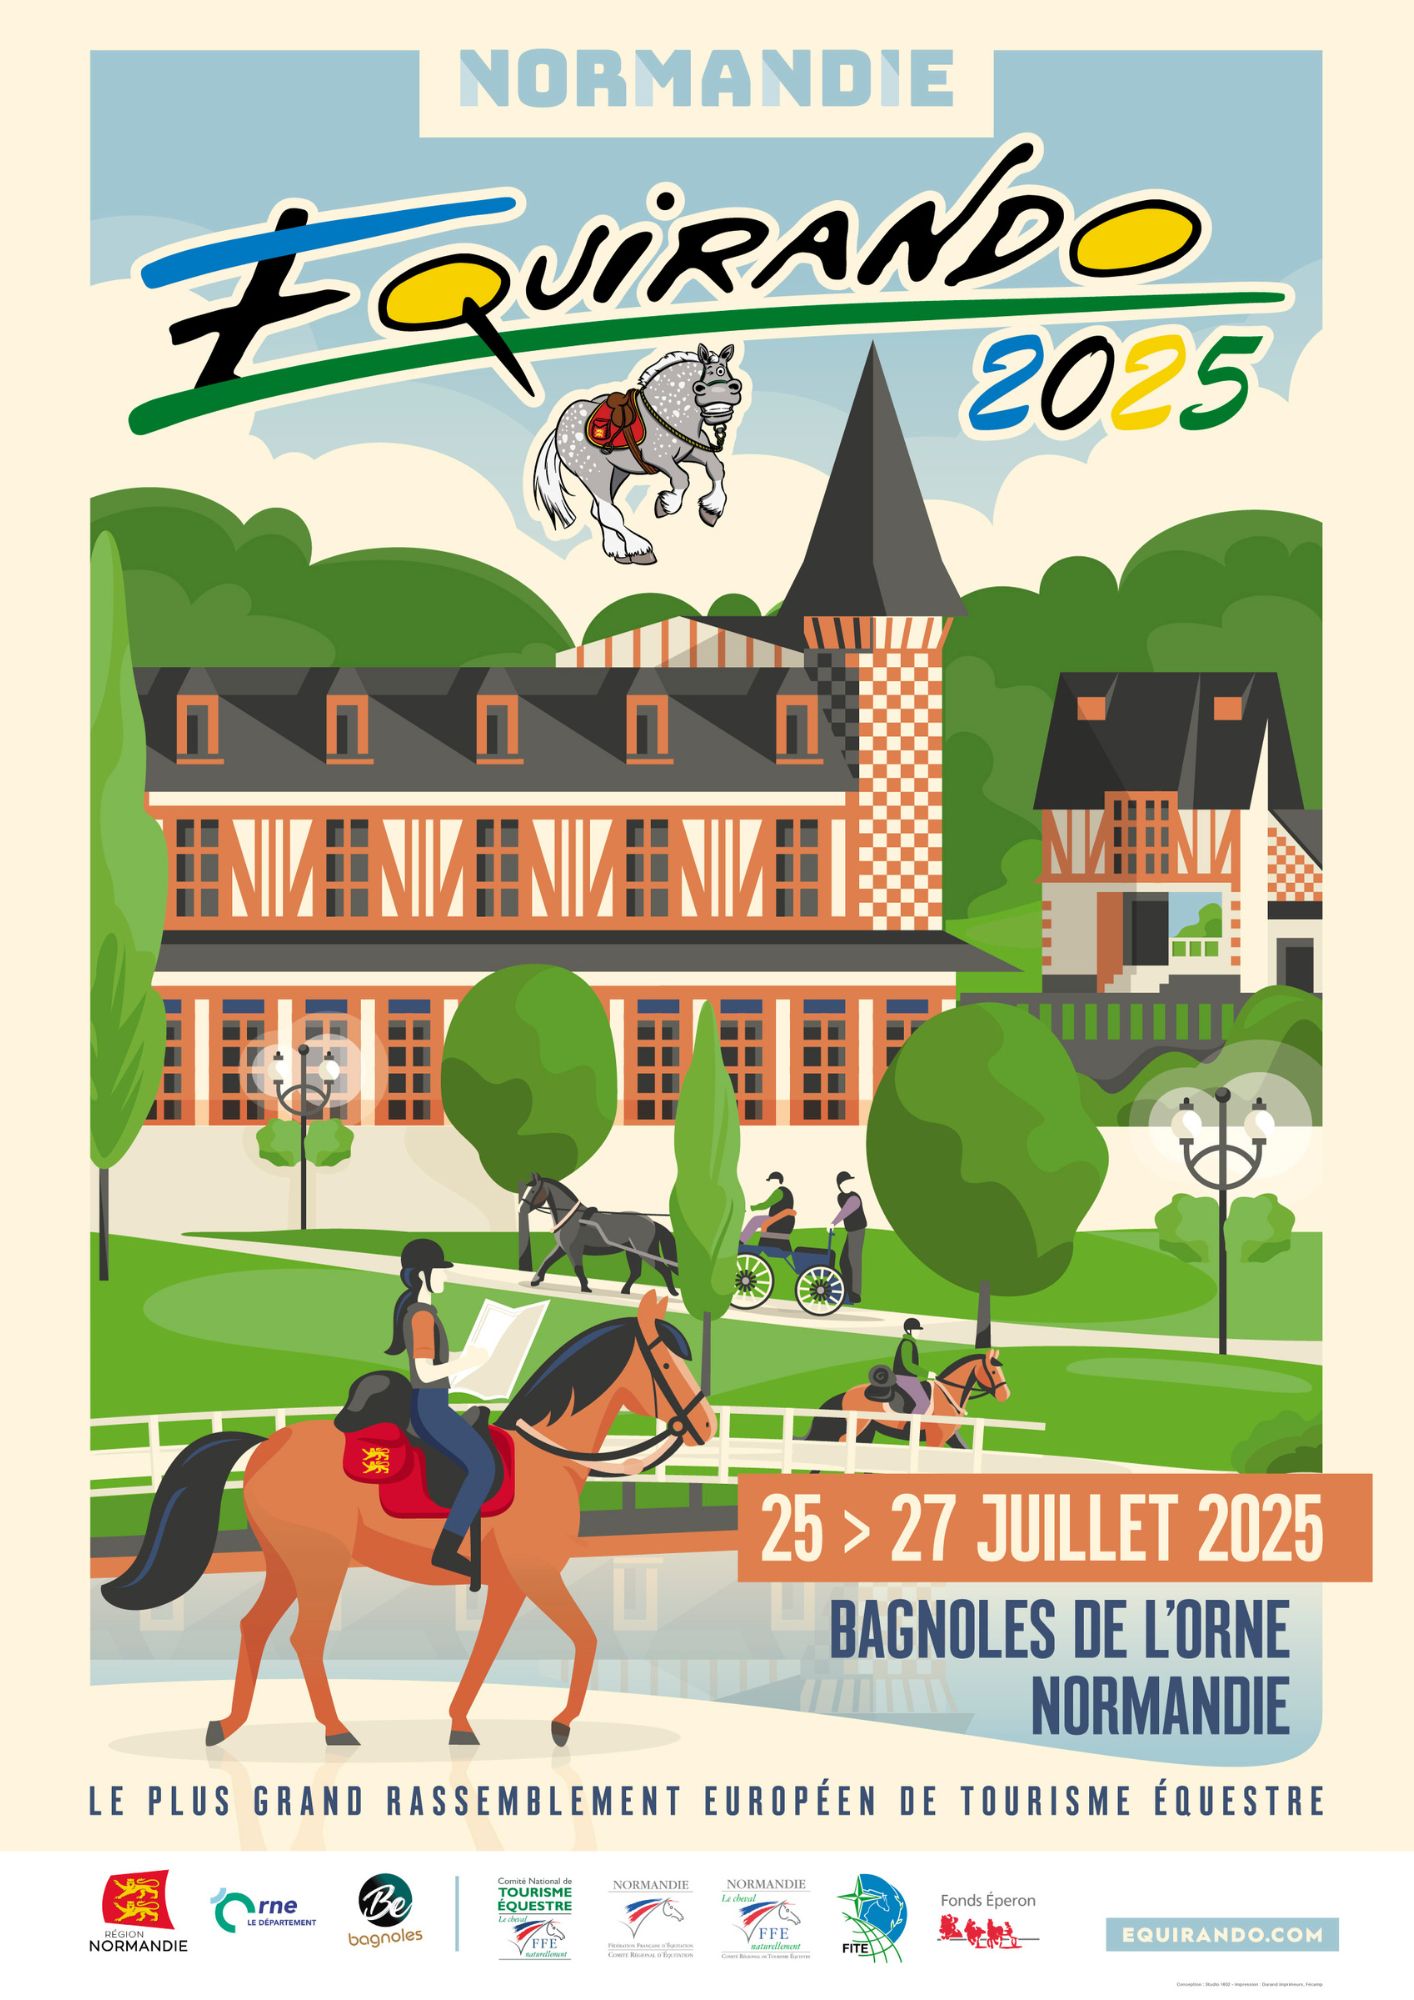 L'affiche de l'Equirando 2025 à Bagnoles sur l'Orne en Normandie